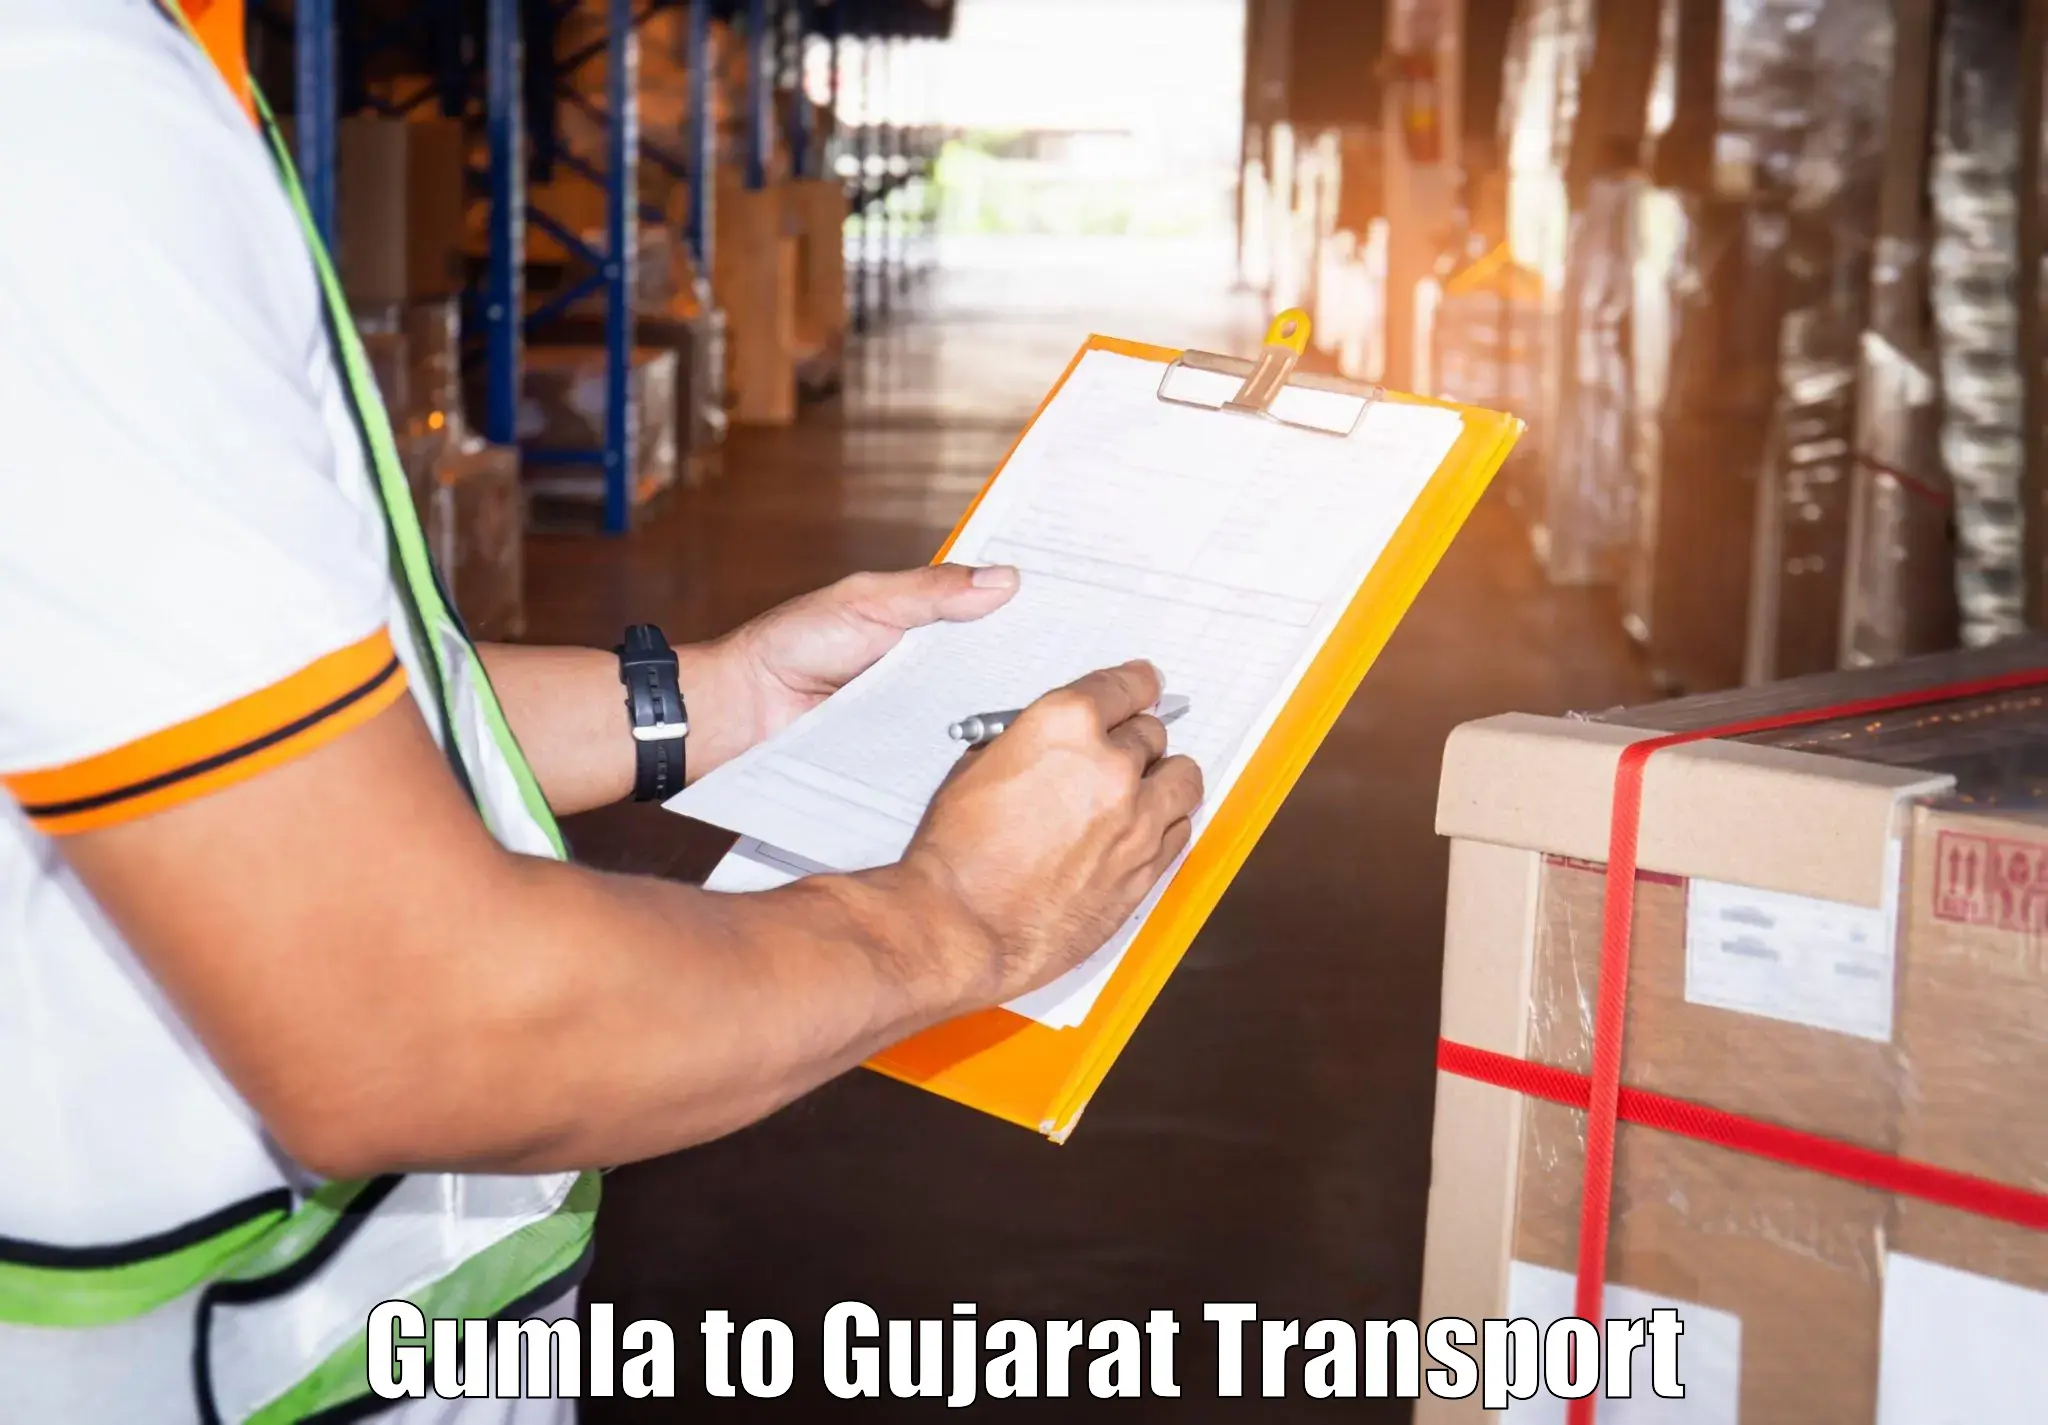 Online transport service Gumla to Tarapur